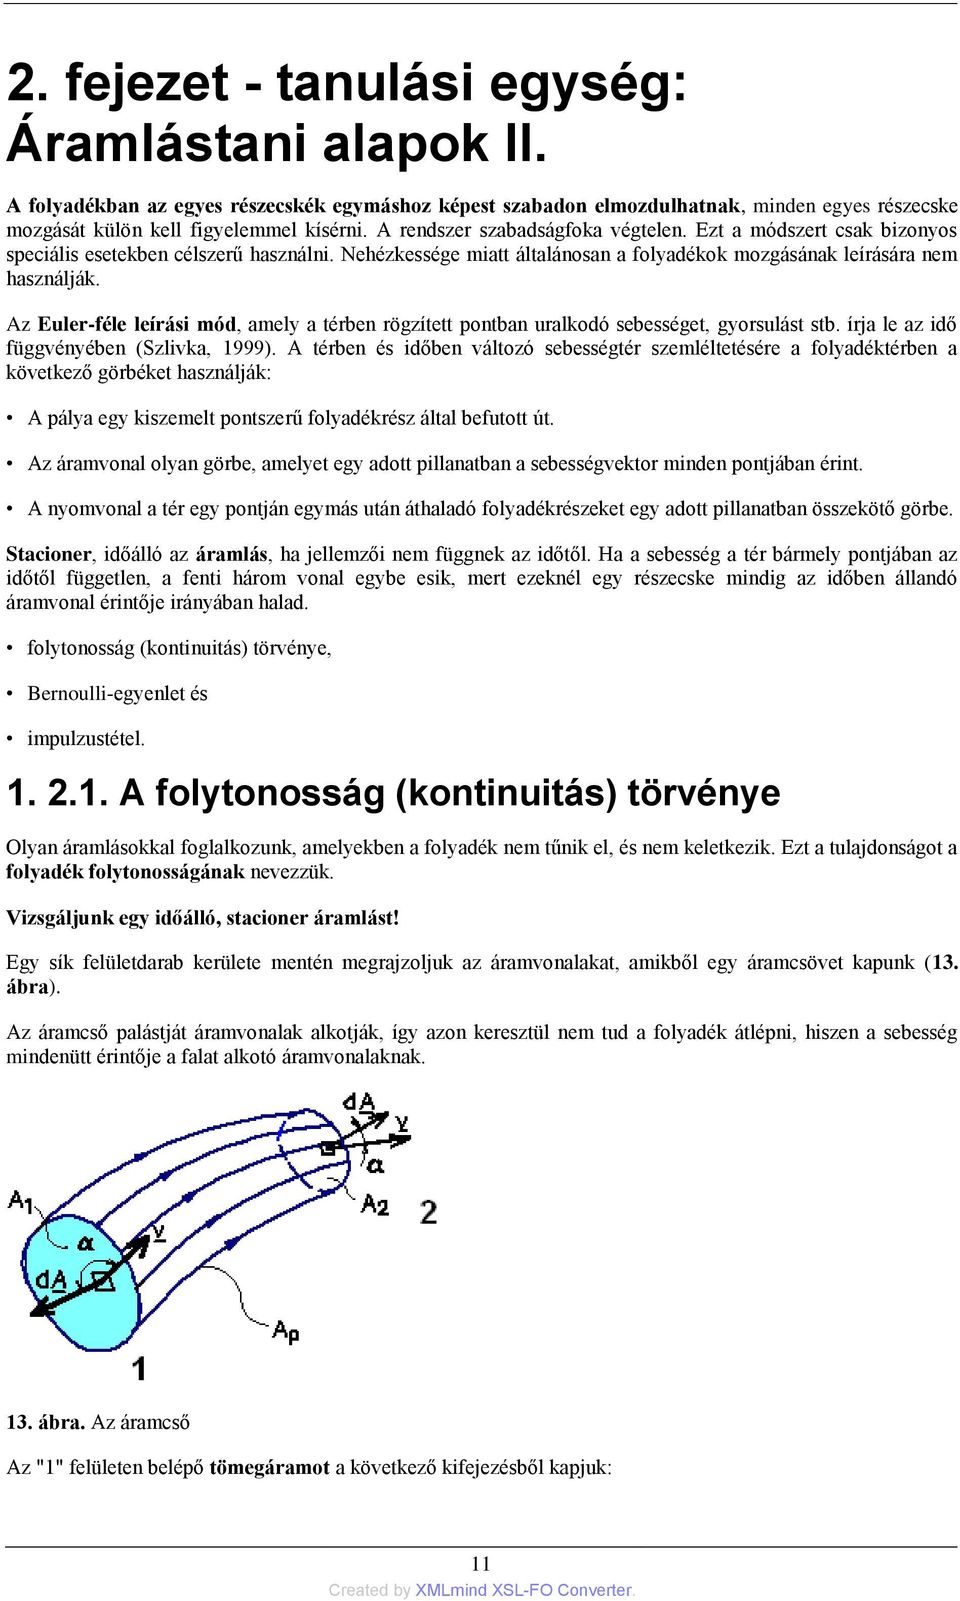 Az Euler-féle leírási mód, amely a térben rögzített pontban uralkodó sebességet, gyorsulást stb. írja le az idő függvényében (Szlivka, 1999).